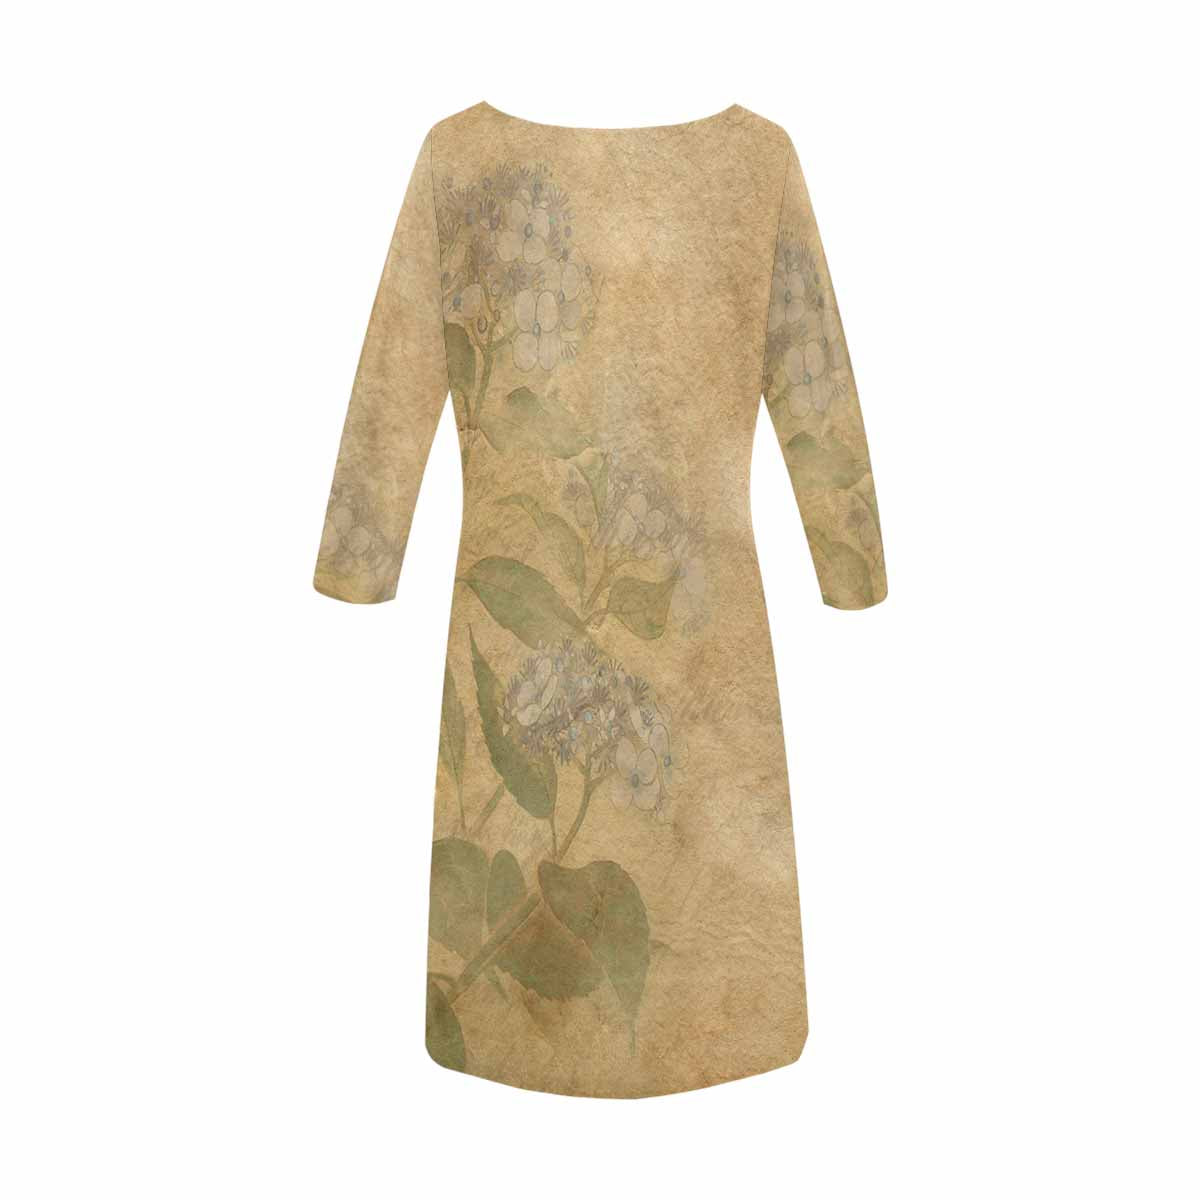 Antique General loose dress, MODEL 29532, design 28